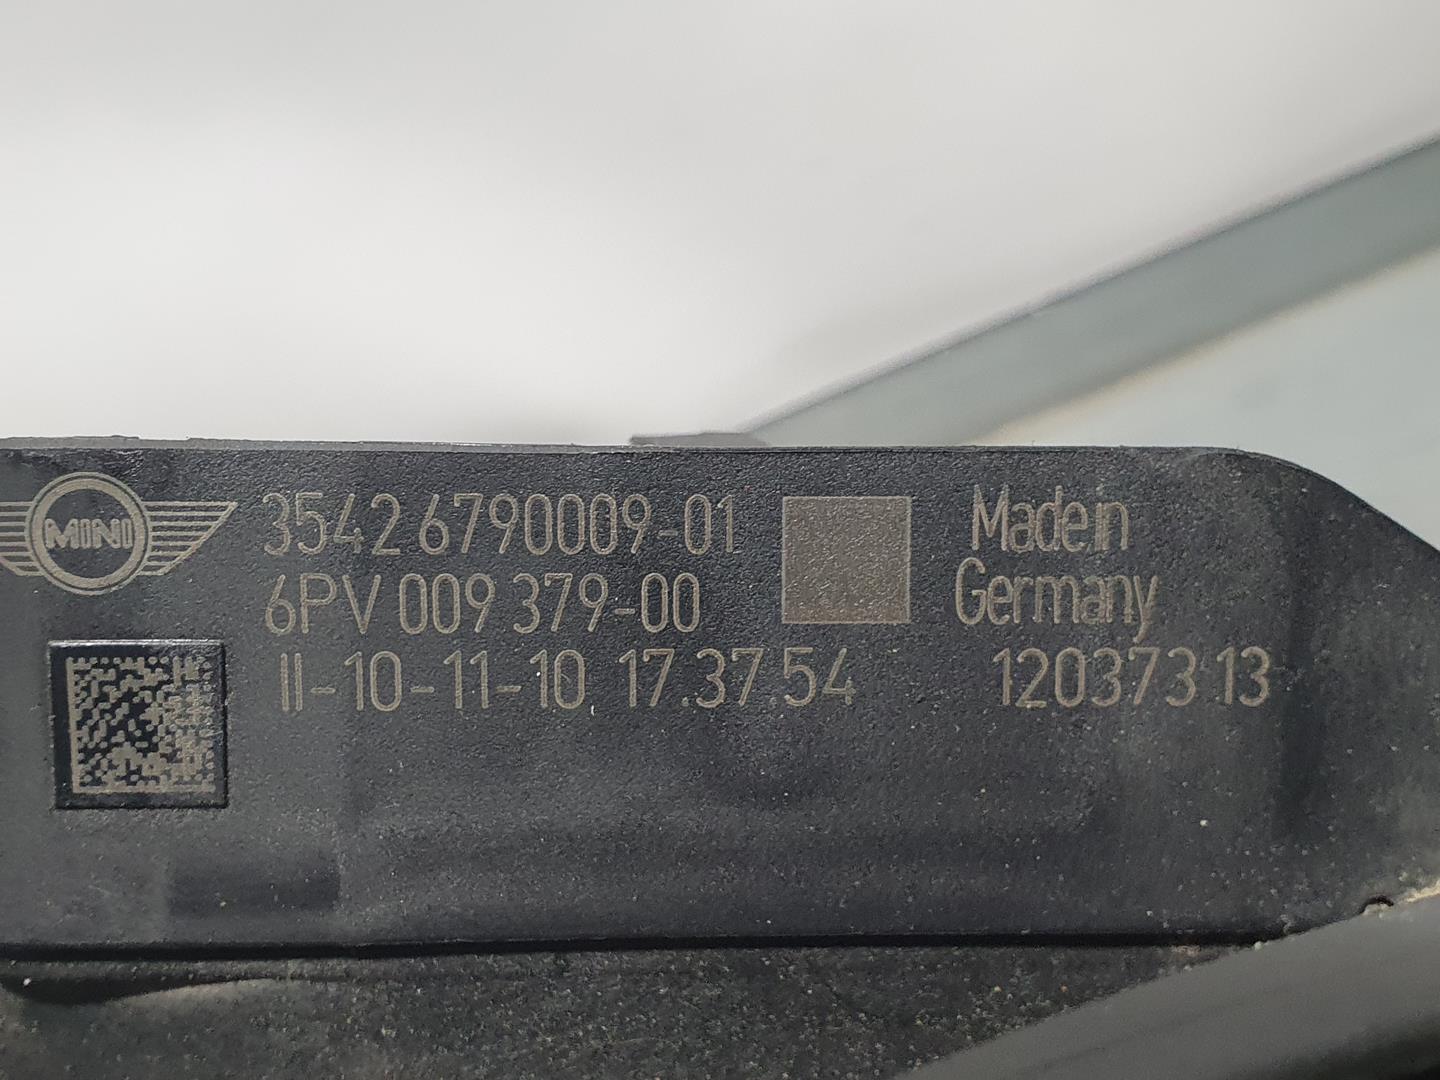 MINI Cooper R56 (2006-2015) Другие кузовные детали 3542679000901, 6PV00937900 18711270